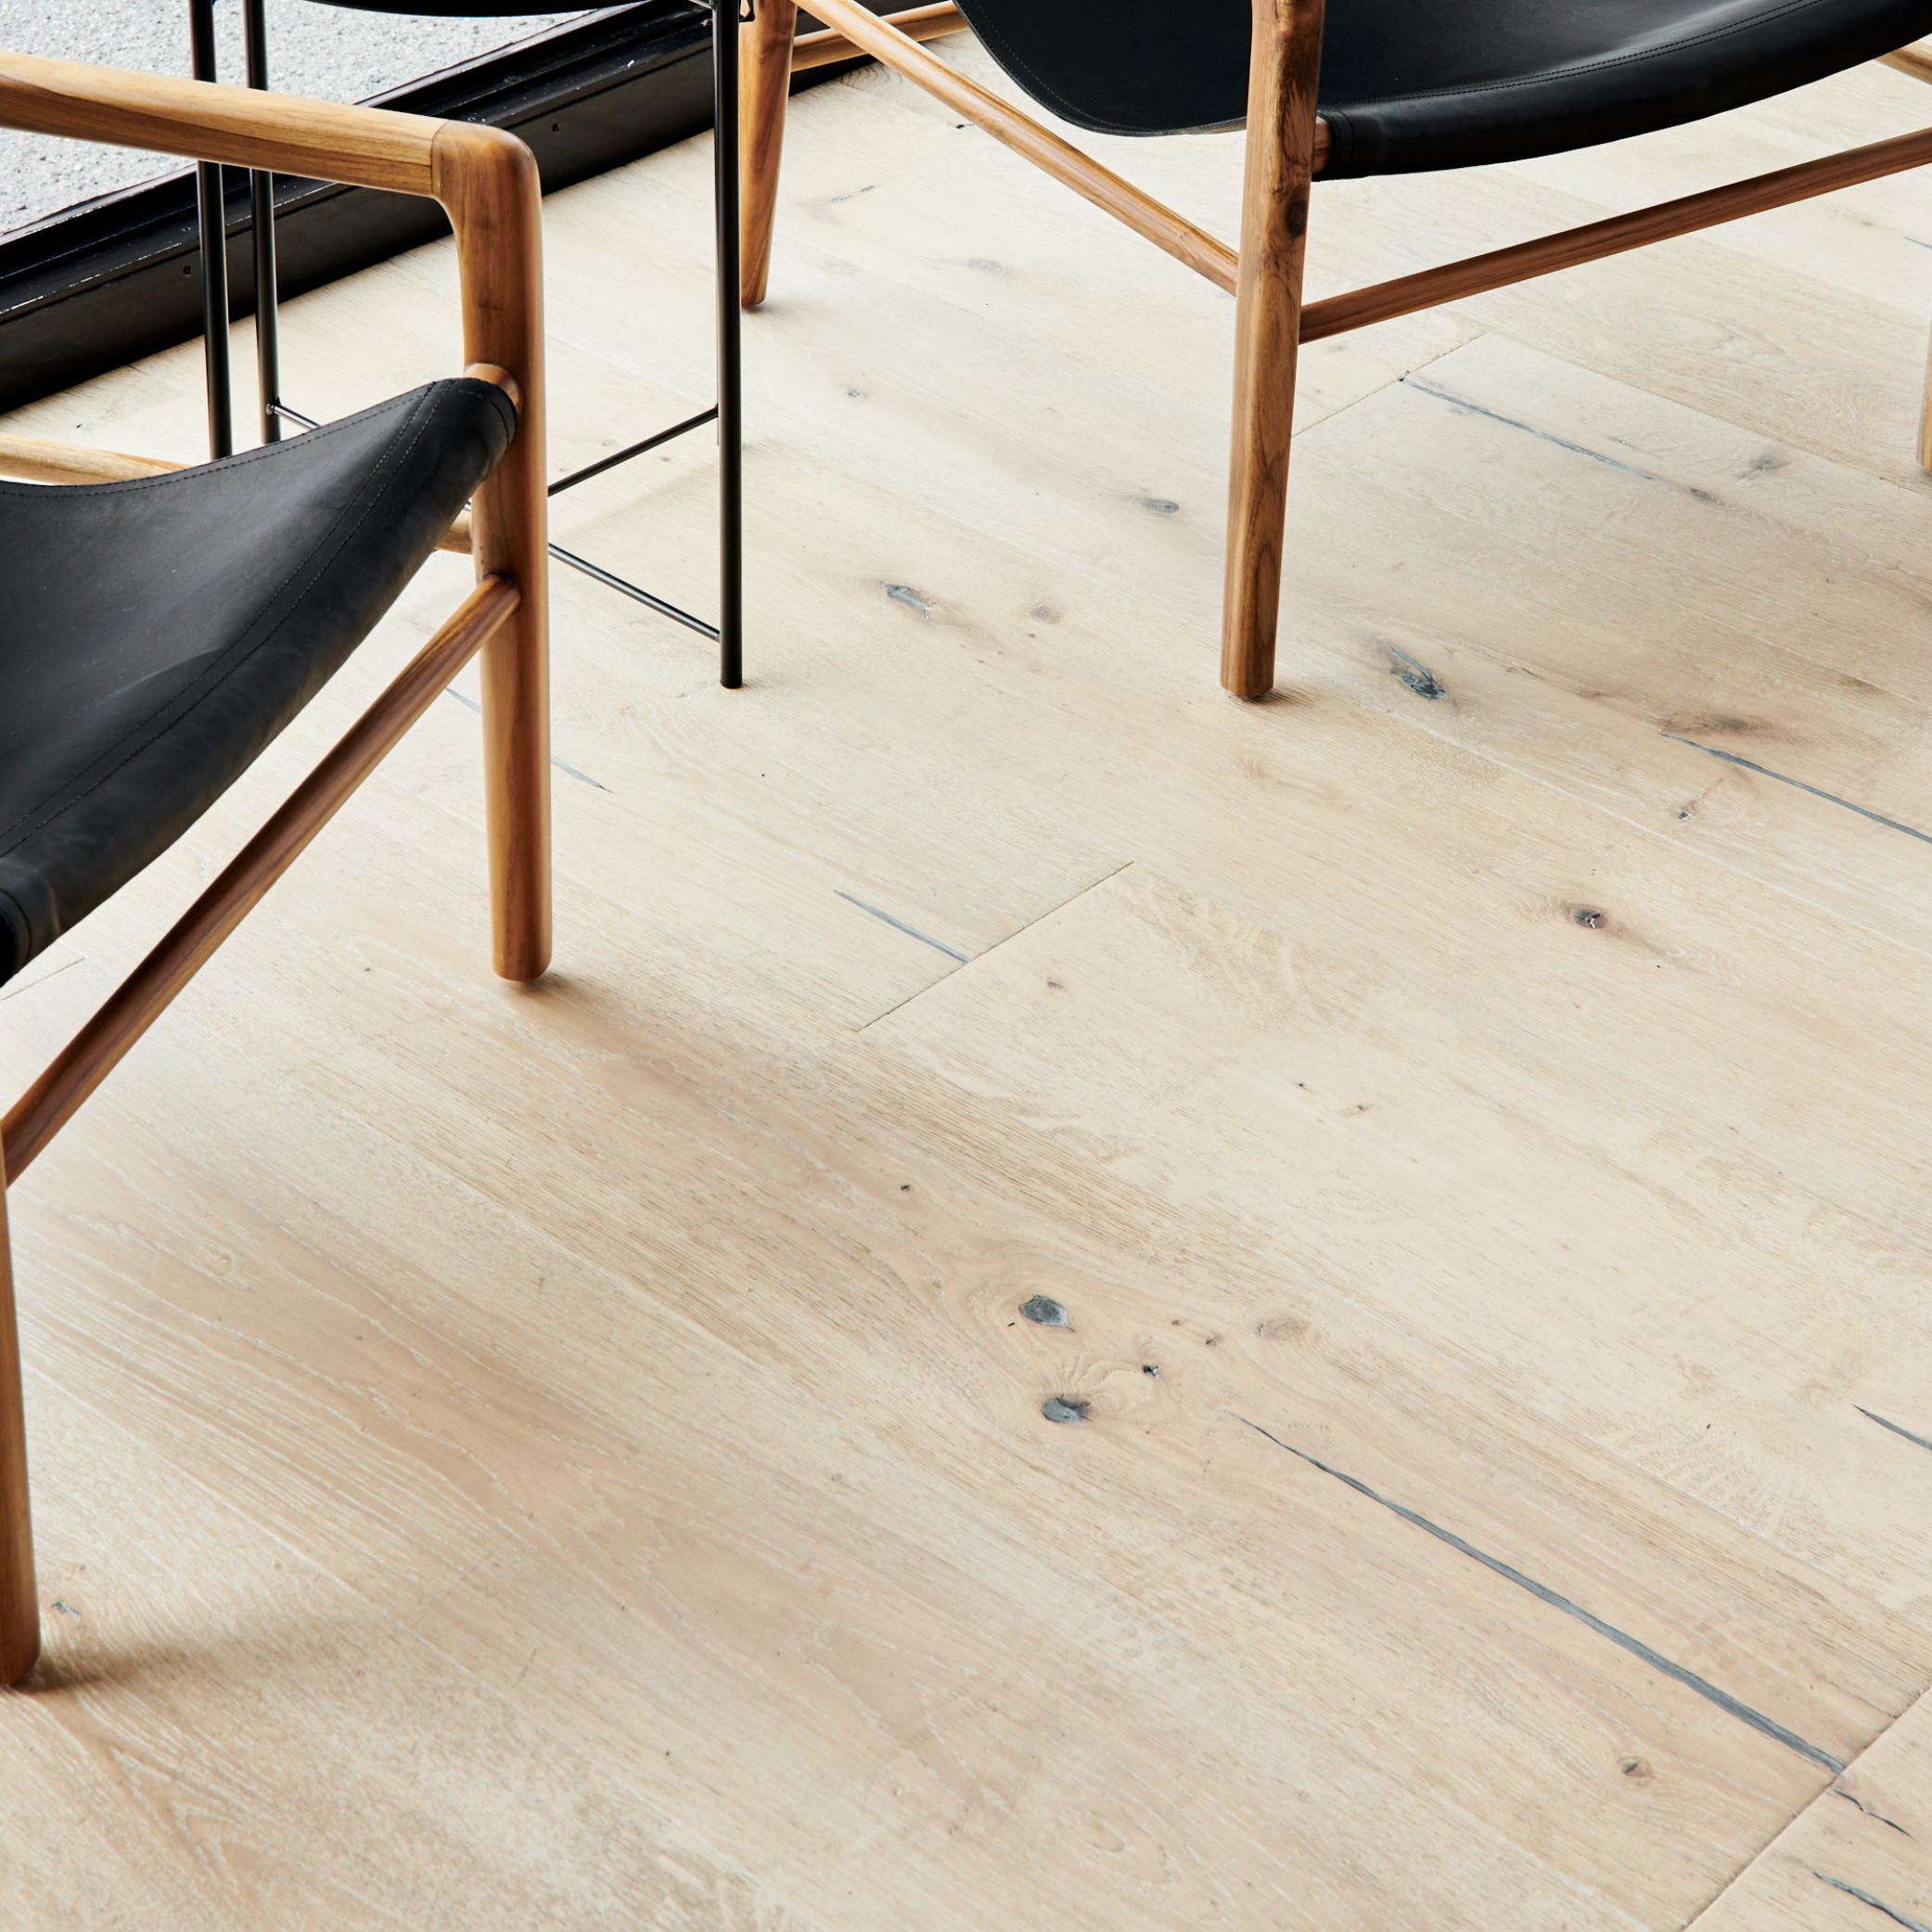 European Oak Flooring Care And, Taking Care Of Engineered Hardwood Floors